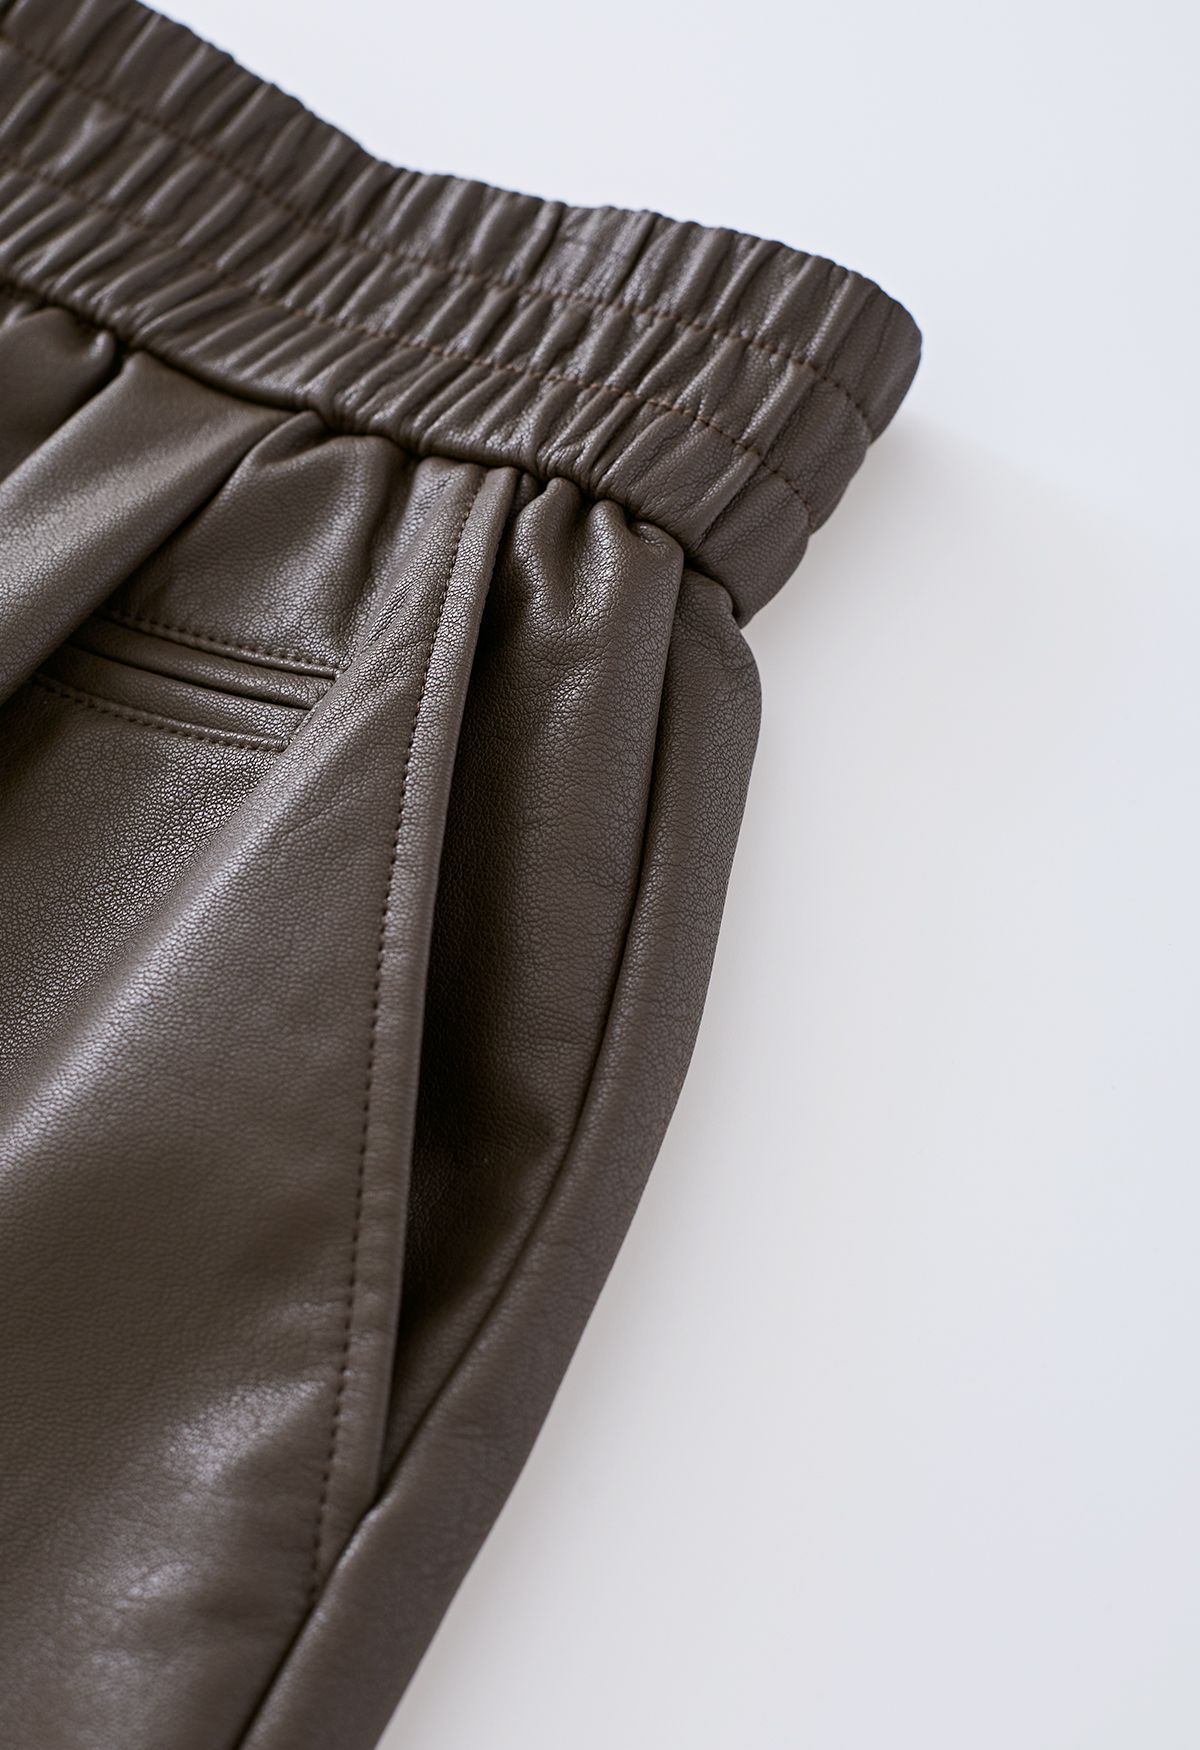 Shorts de couro sintético com botões texturizados em marrom